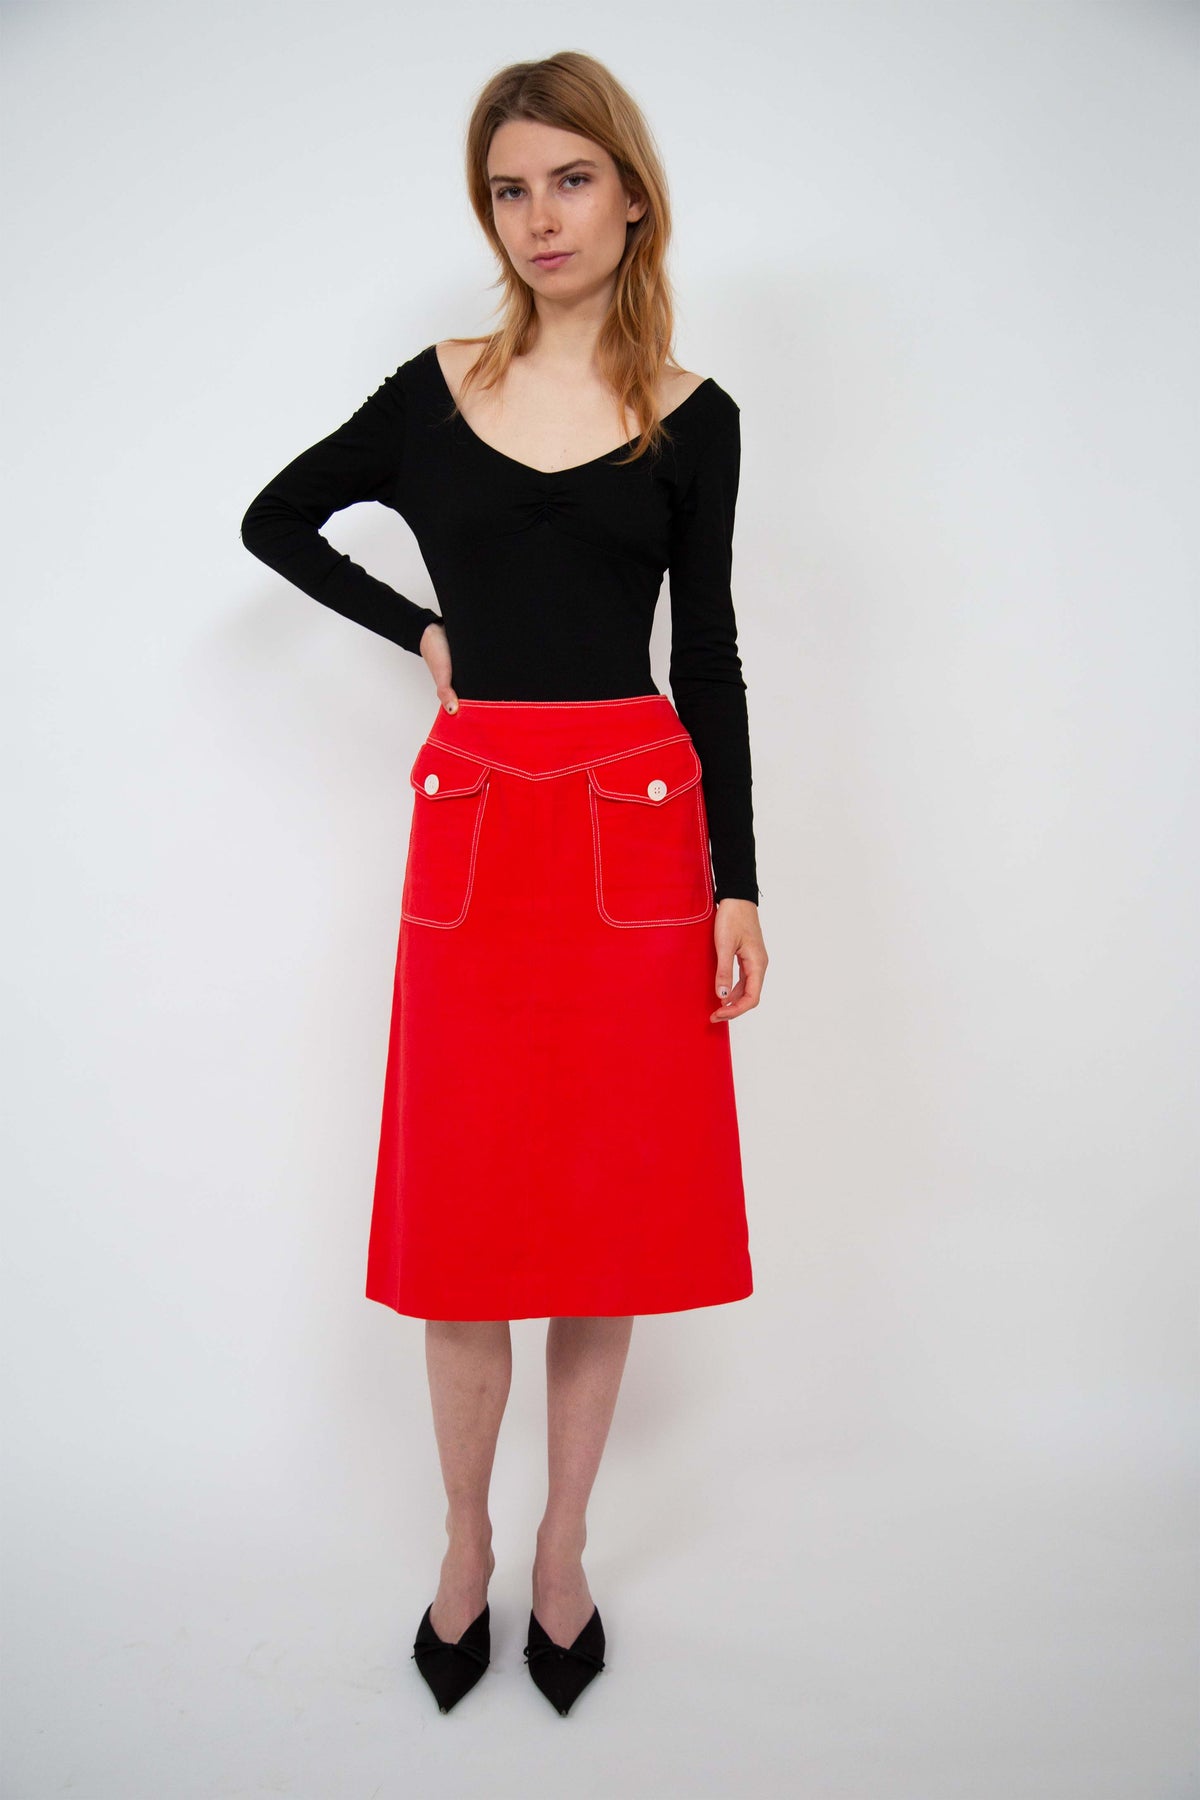 Celine skirt